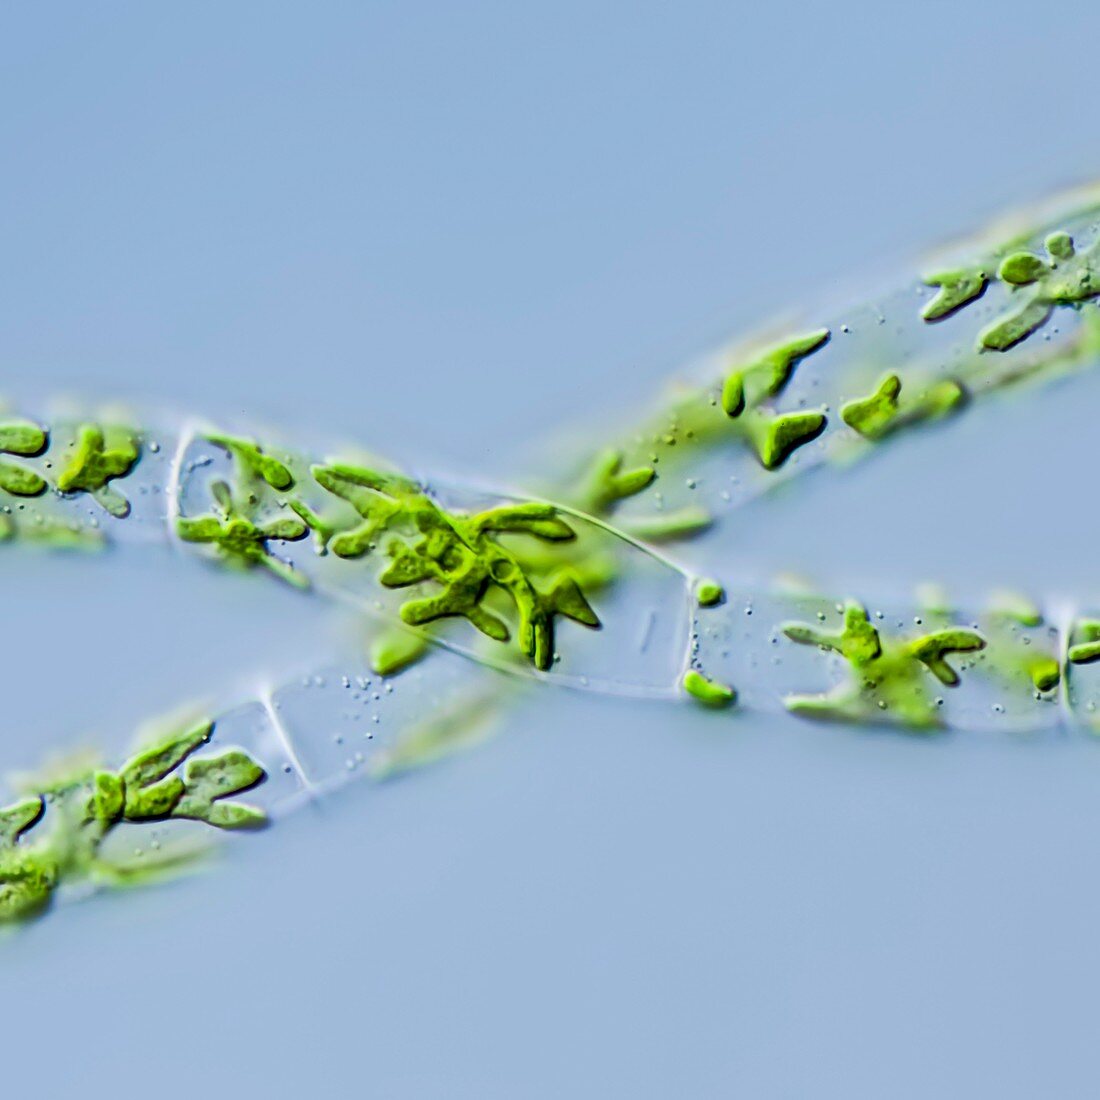 Zygnema pseudogedeanum green alga,LM